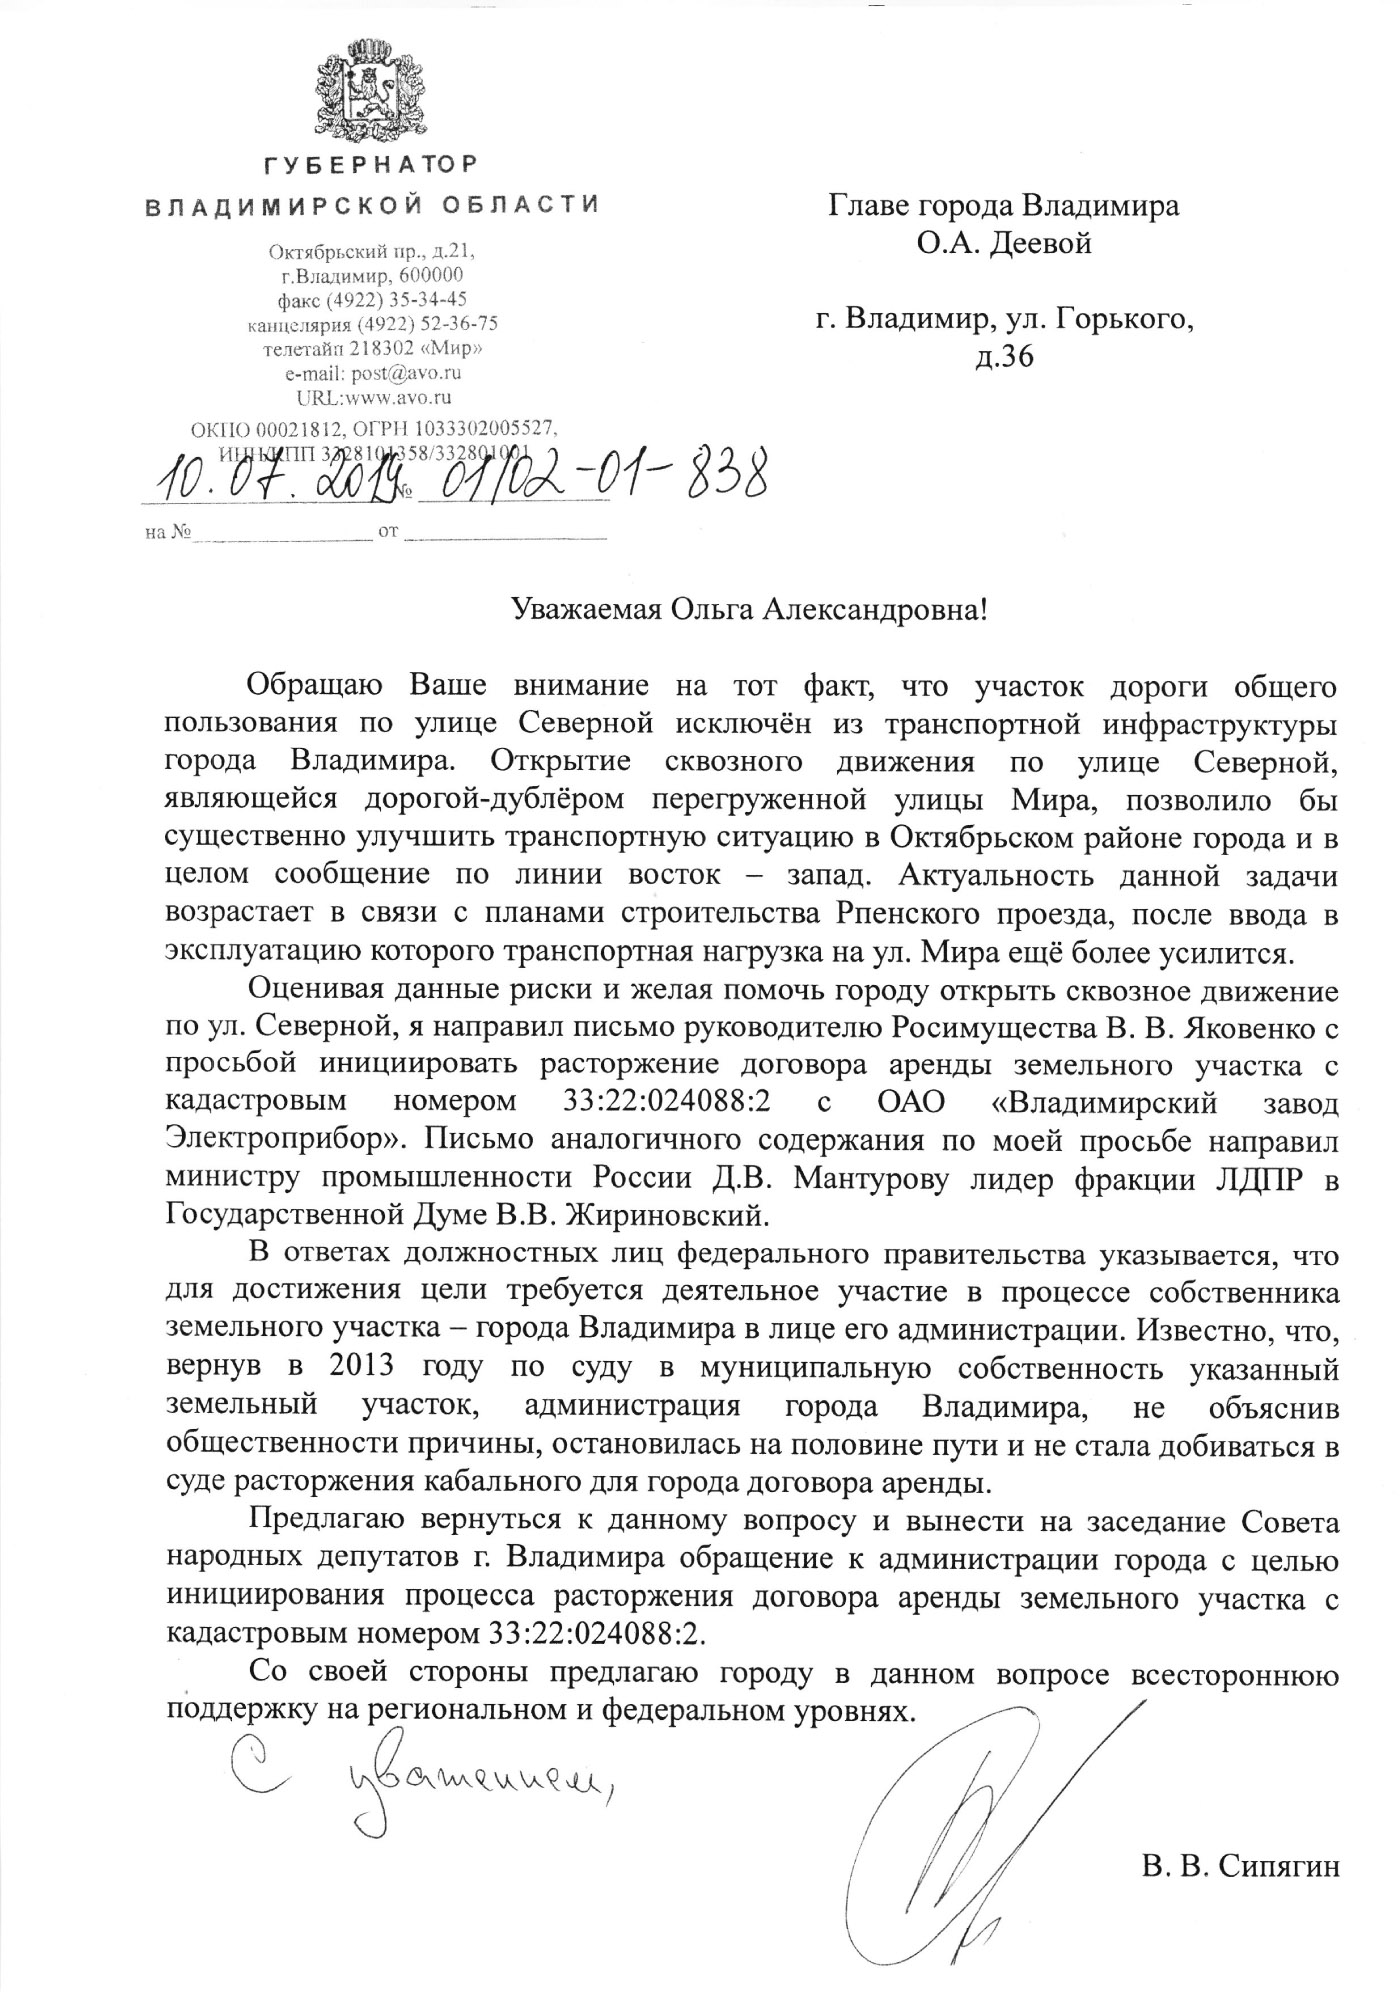 letter_Severnaya.jpg